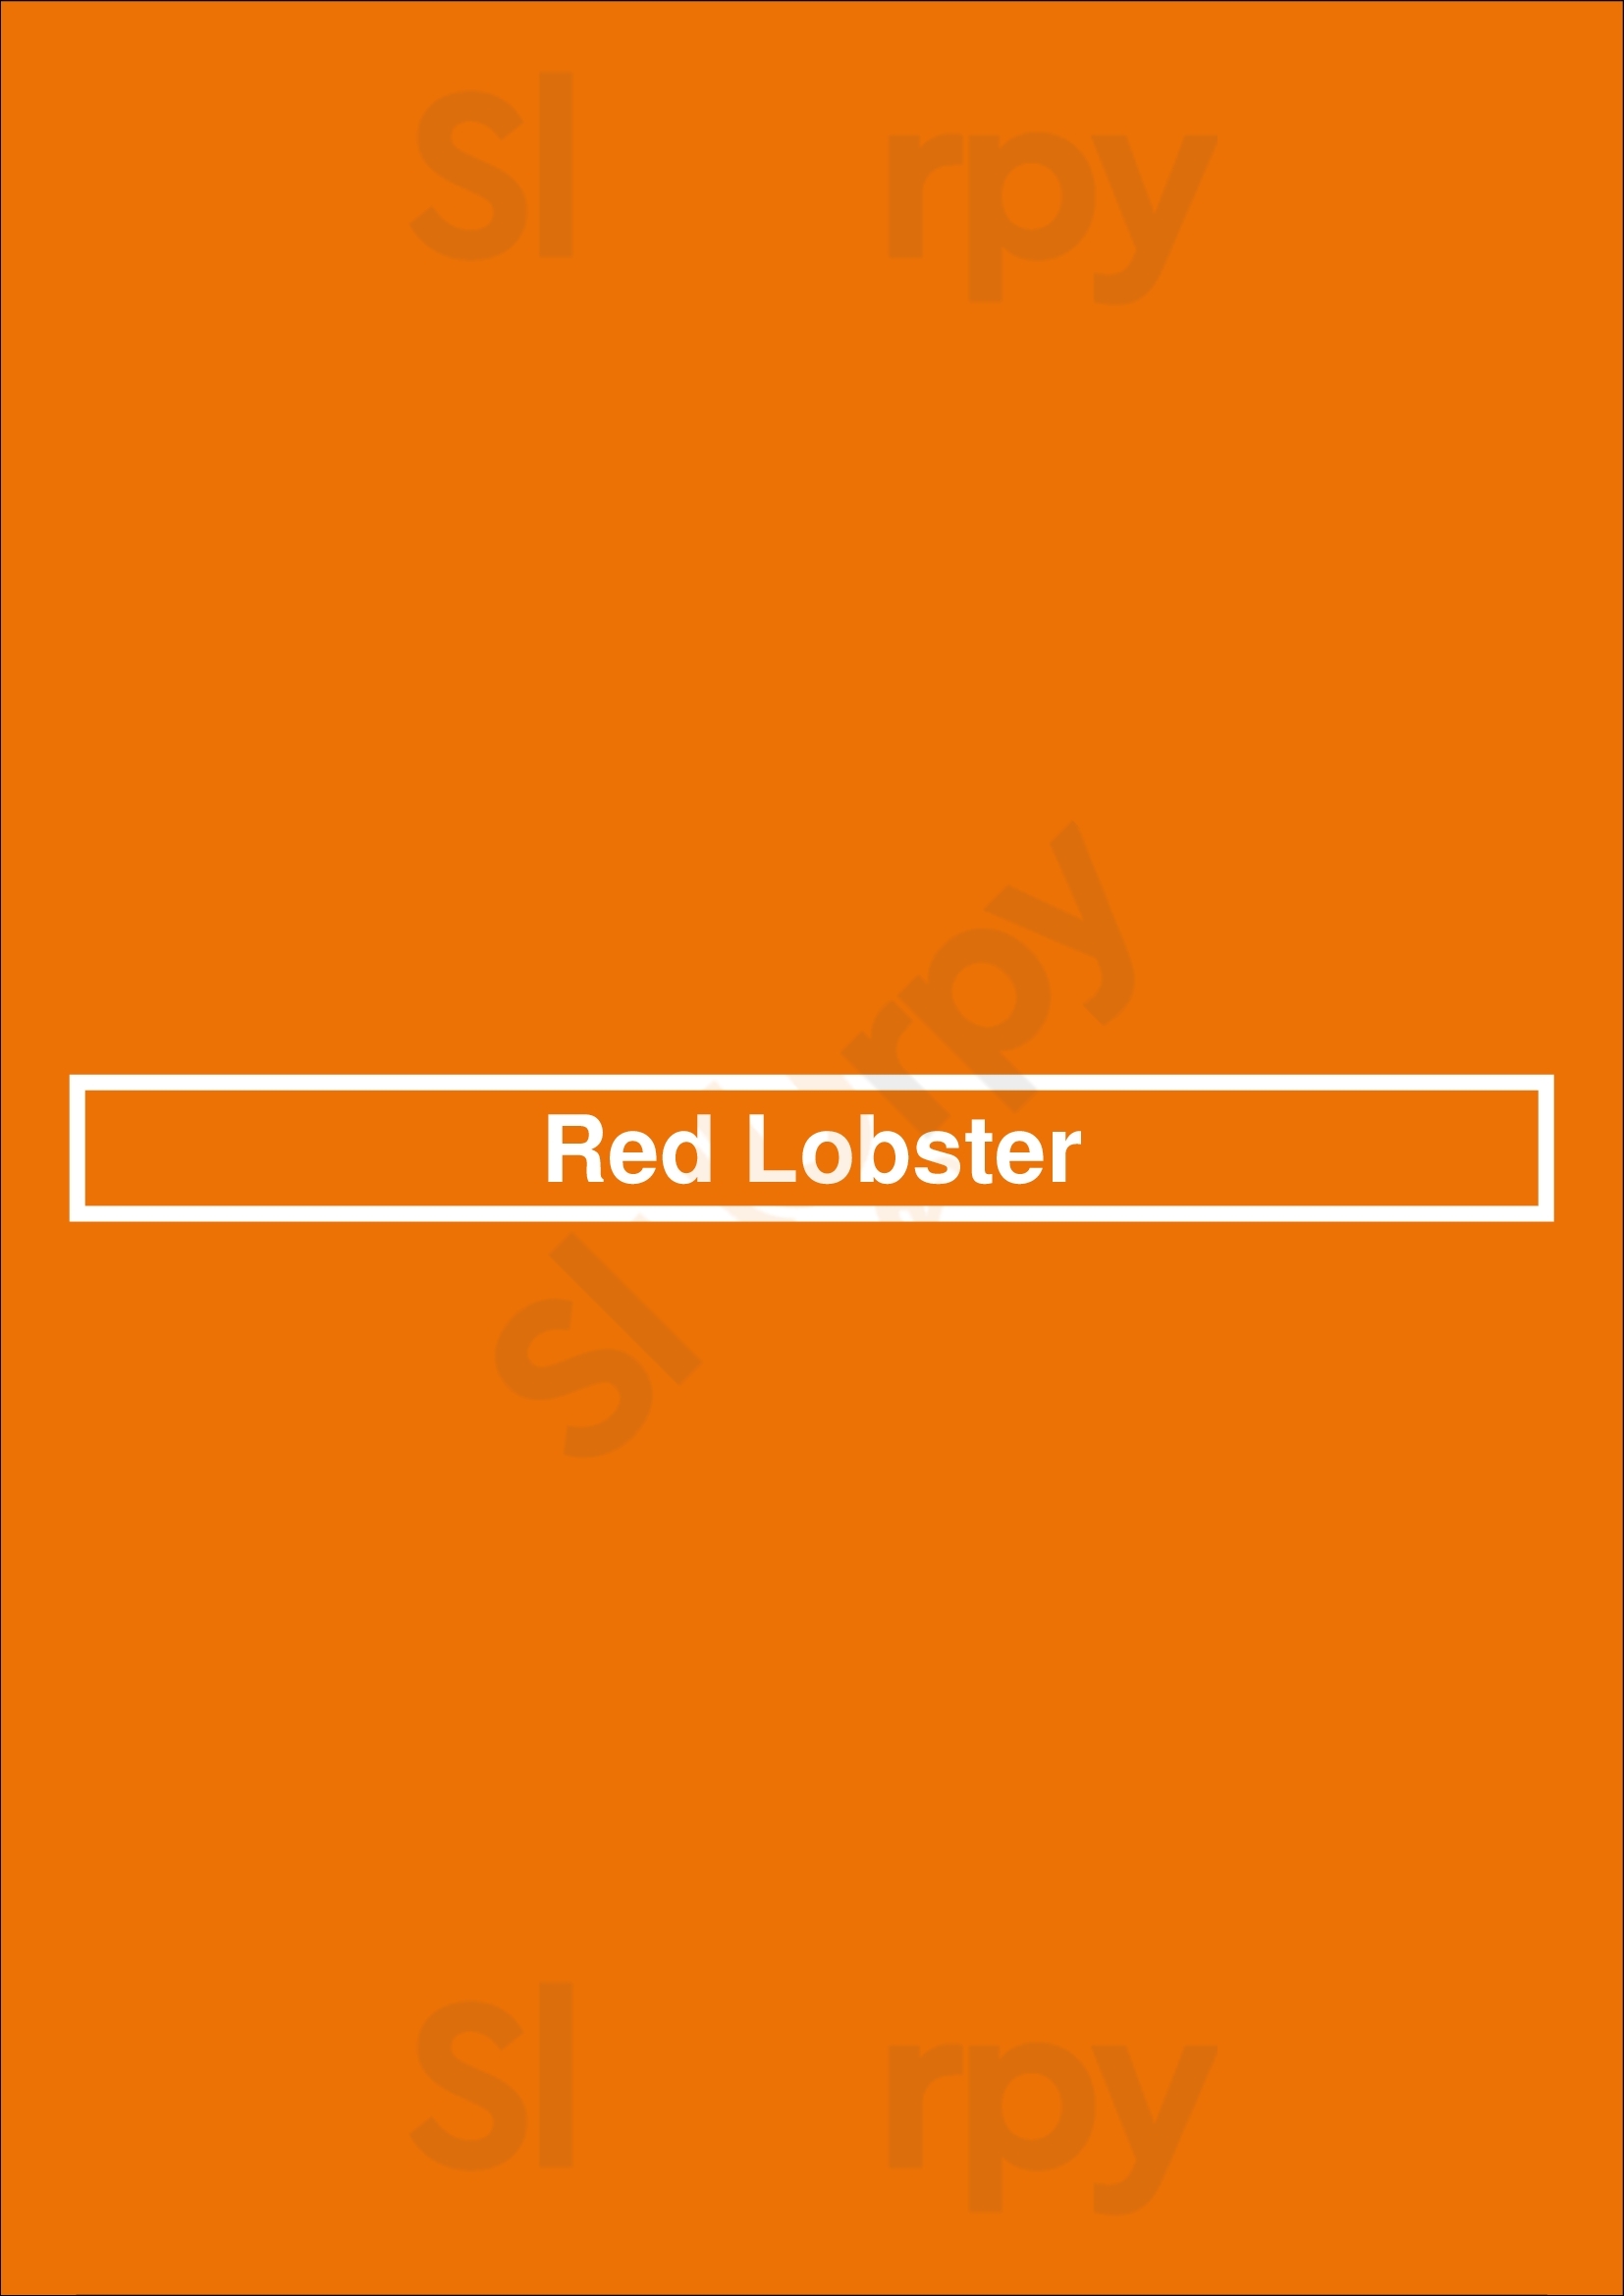 Red Lobster Tucson Menu - 1